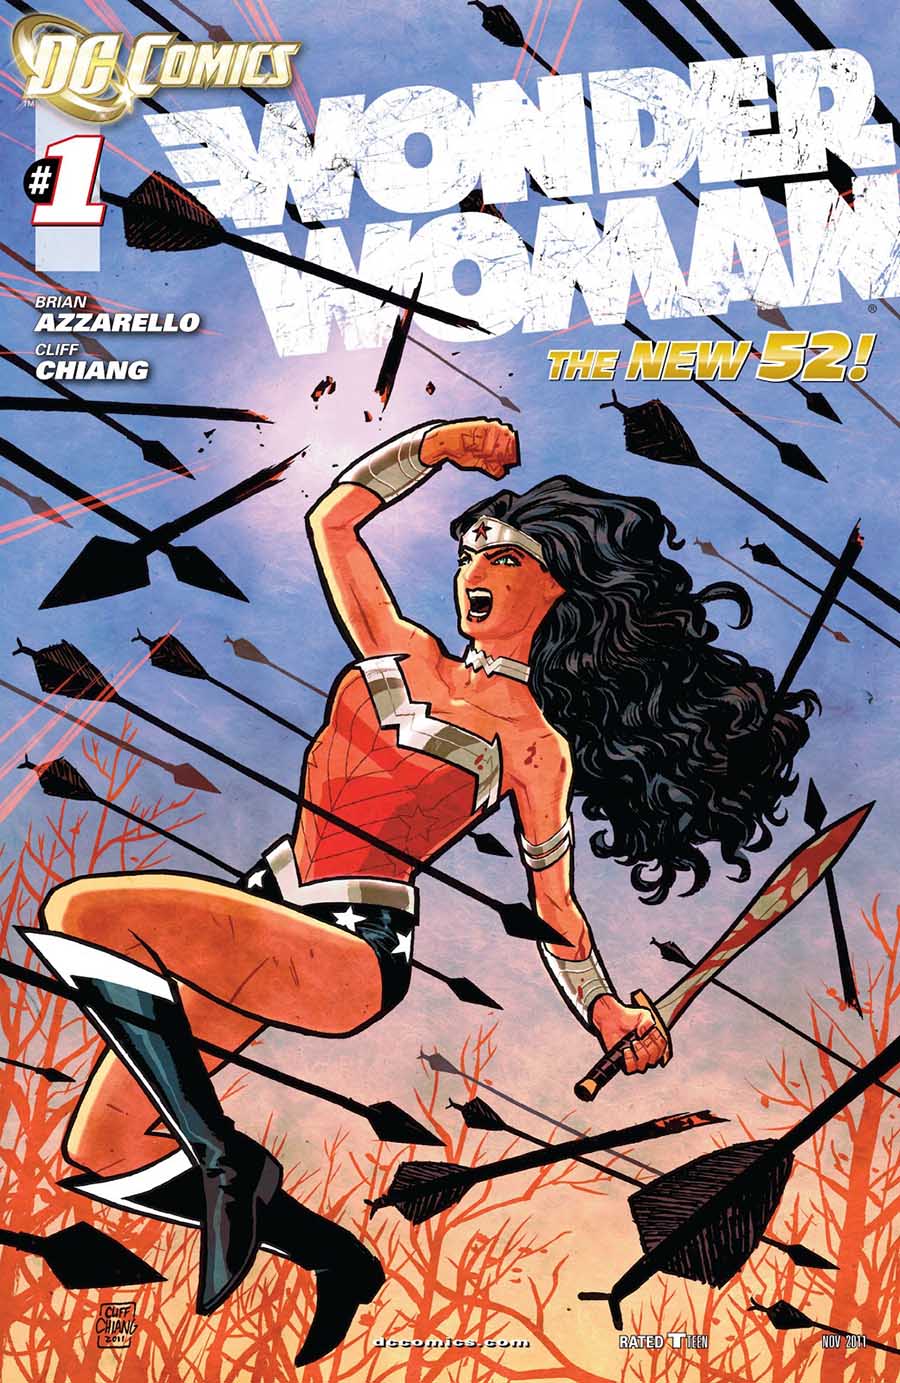 Wonder Woman (Brian Azzarello)